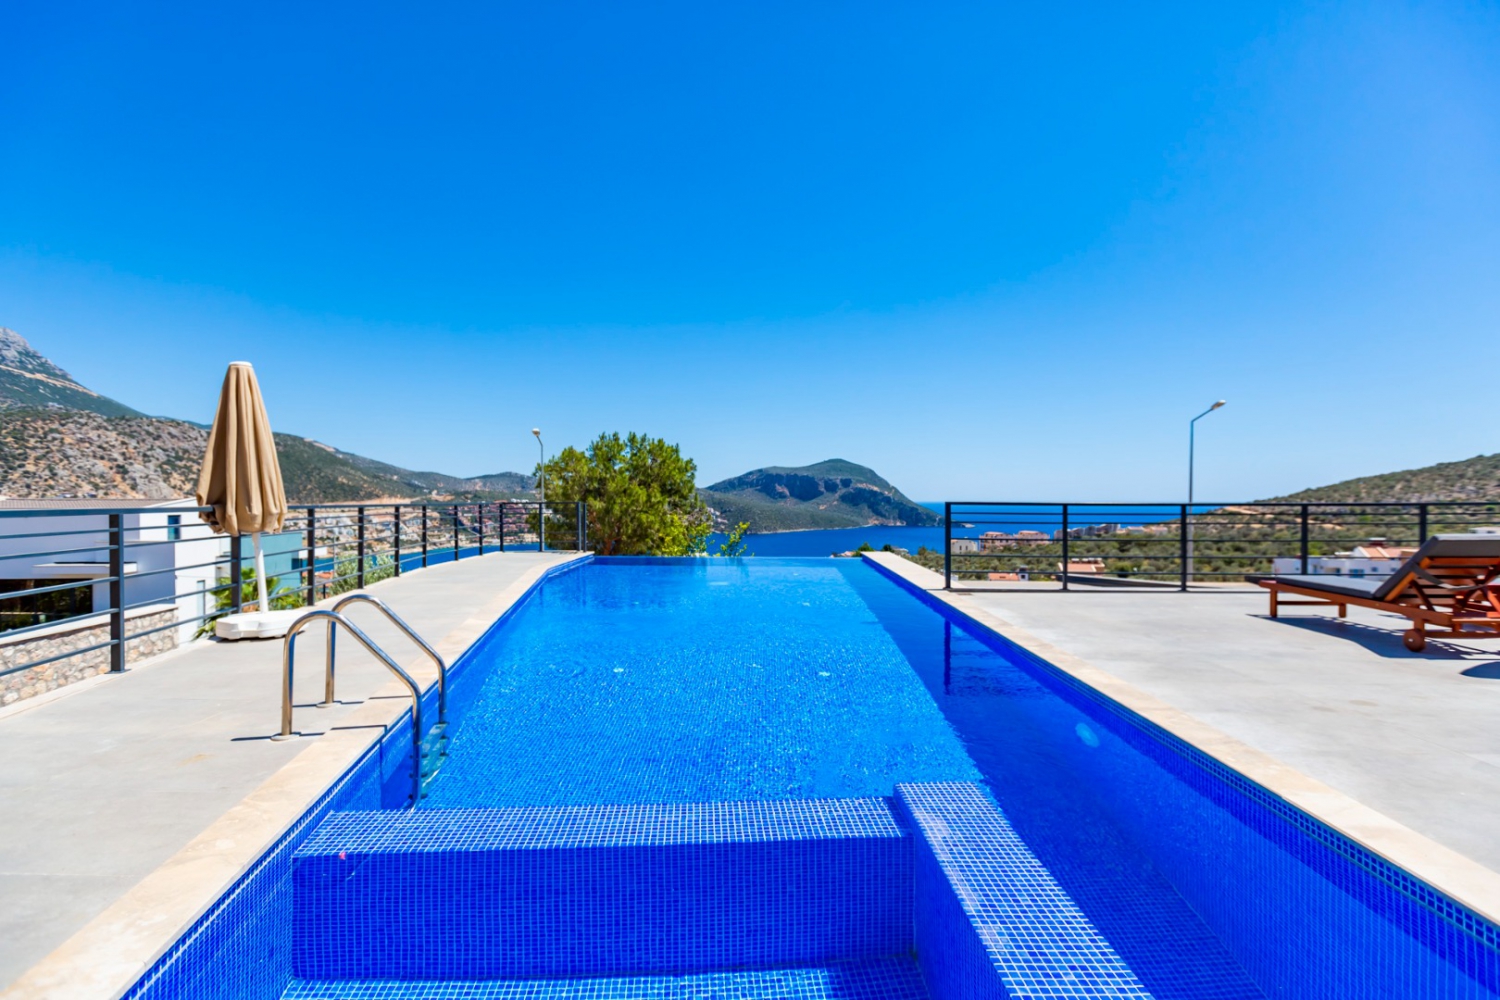 Villa Aquamarine - 8 kişilik Merkeze Yakın, Deniz Manzaralı Tatil Villası | Likyavillam